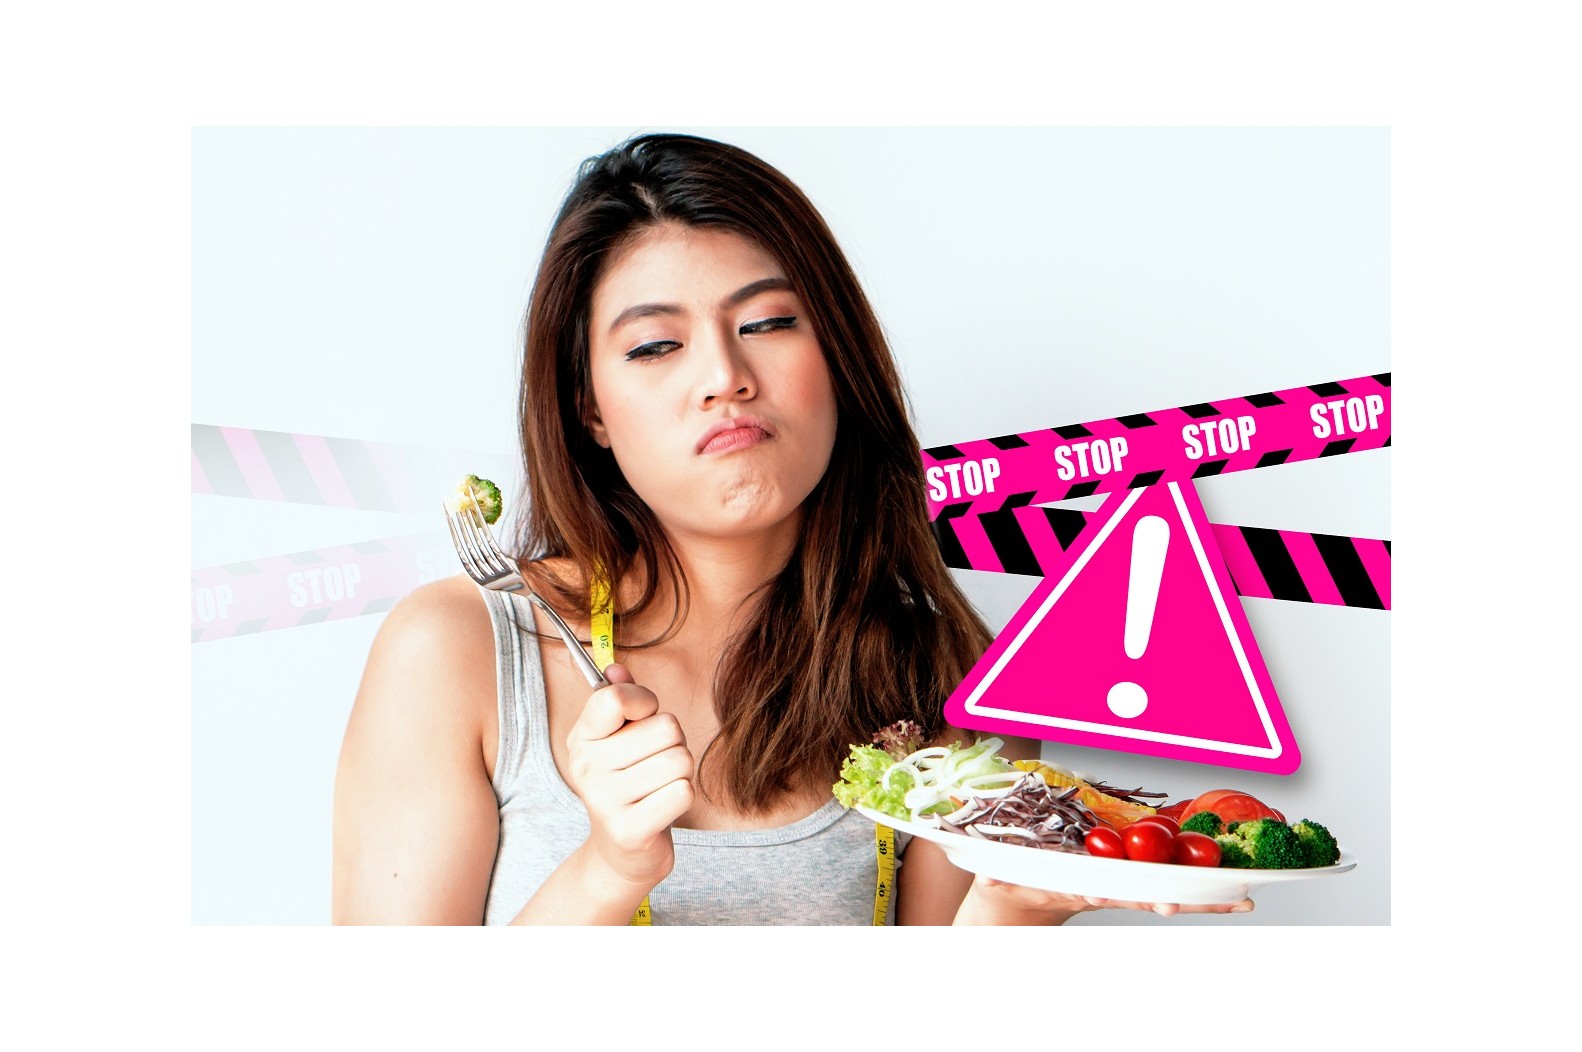 Další nebezpečné diety, které raději nezkoušej